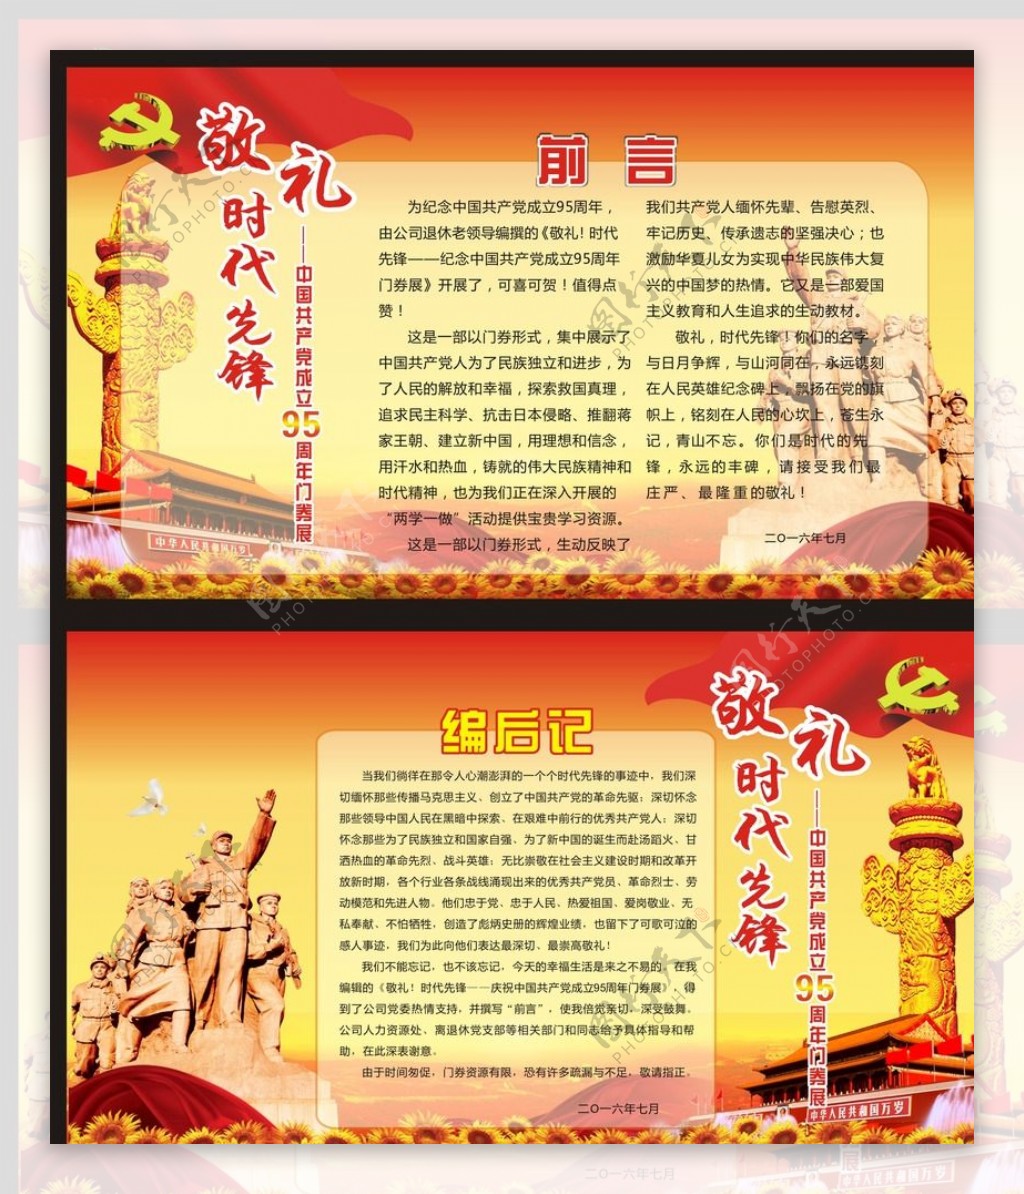 中国成立95周年门券展